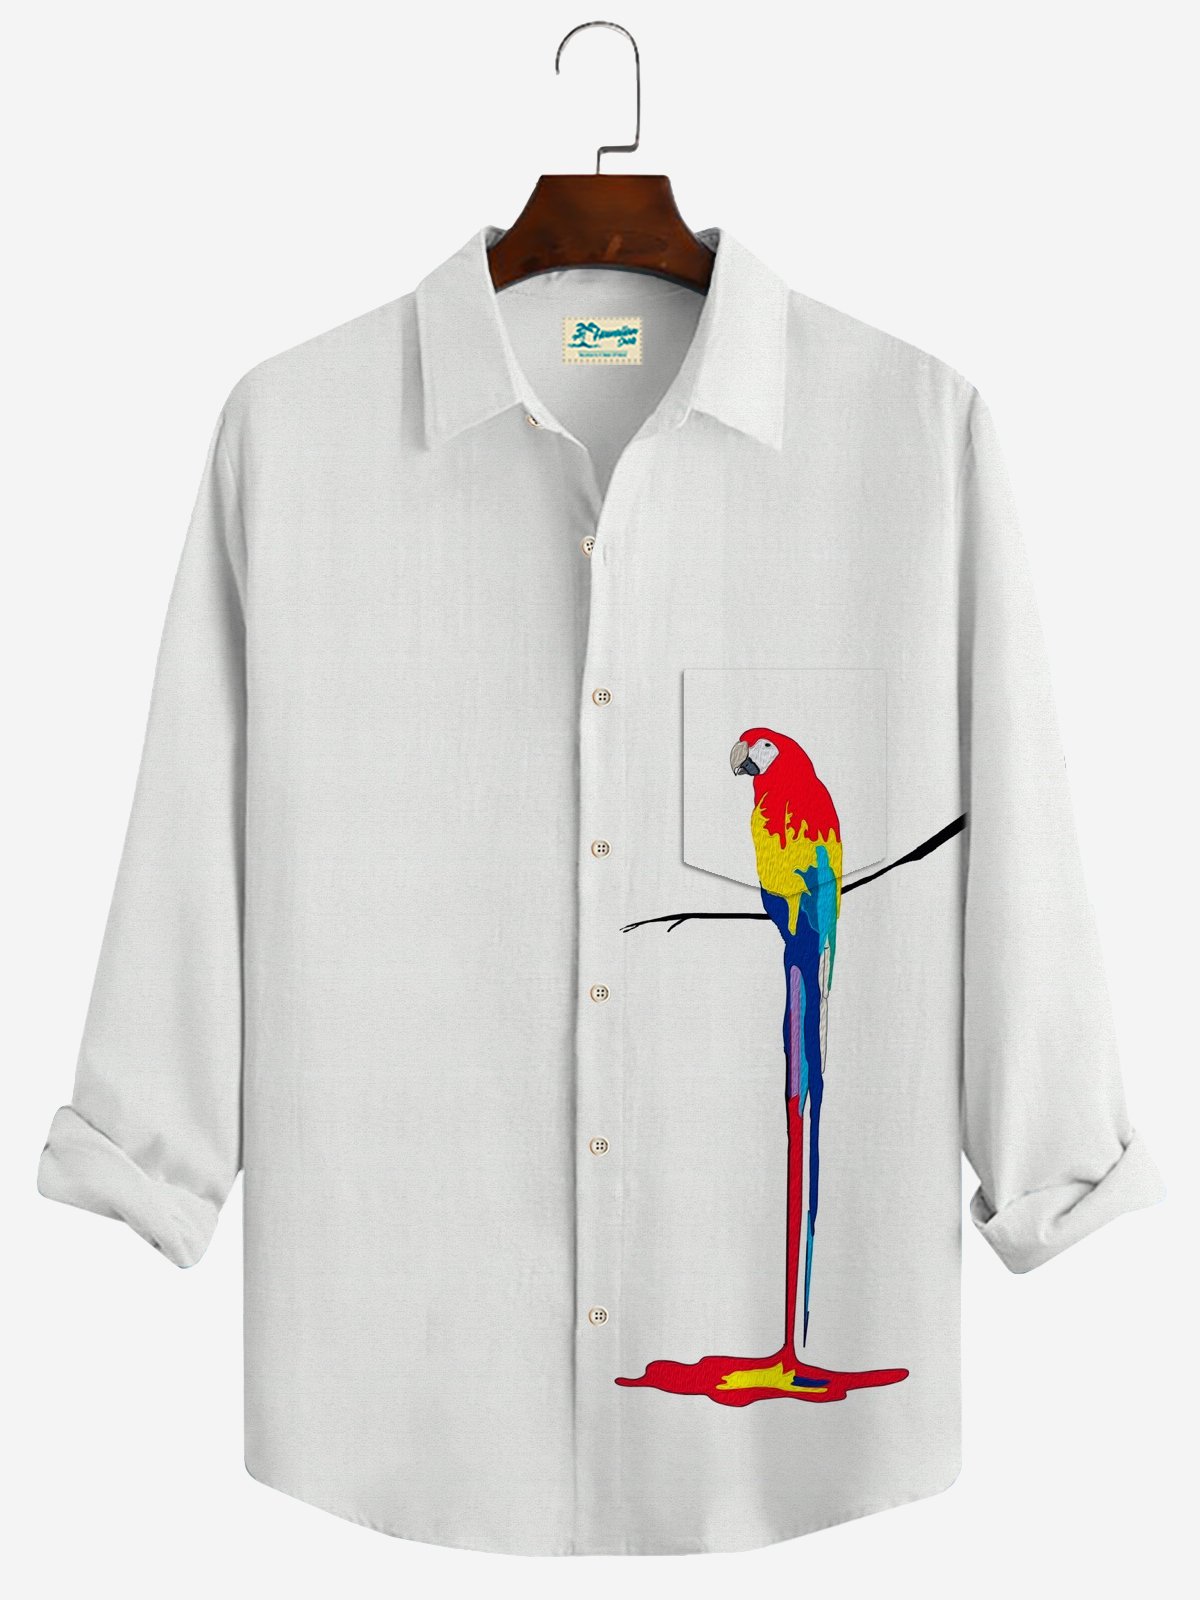 JoyMitty Parrot Print Casual Men's Hawaiian Vacation Oversized Long Sleeve Shirt